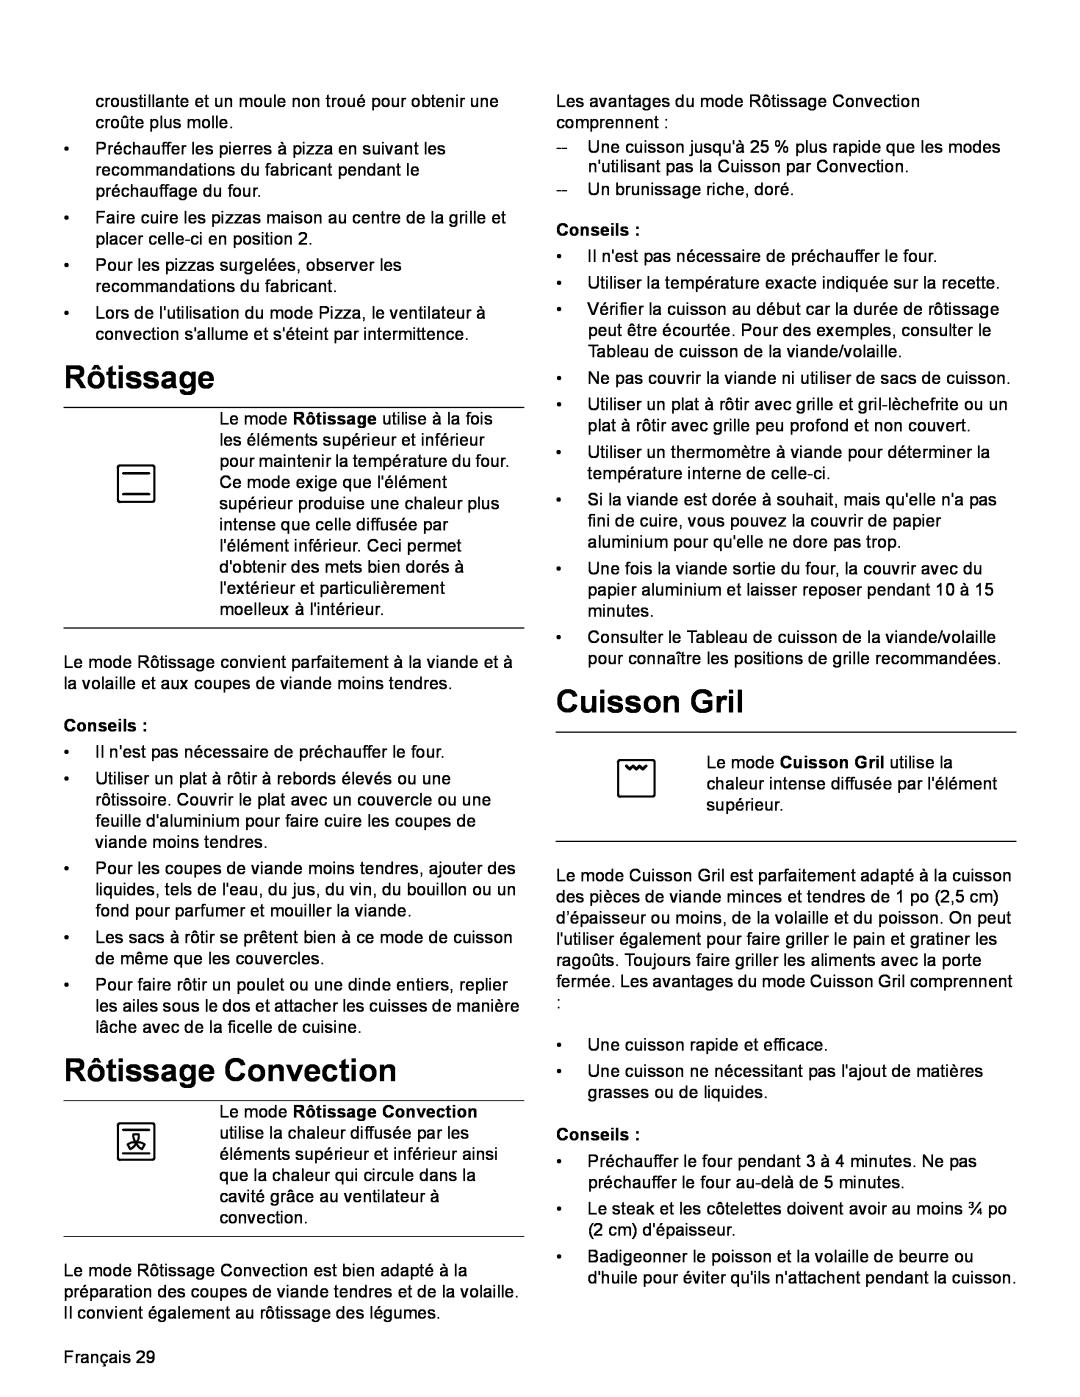 Bosch Appliances HDI8054U manual Cuisson Gril, Le mode Rôtissage Convection, Conseils 